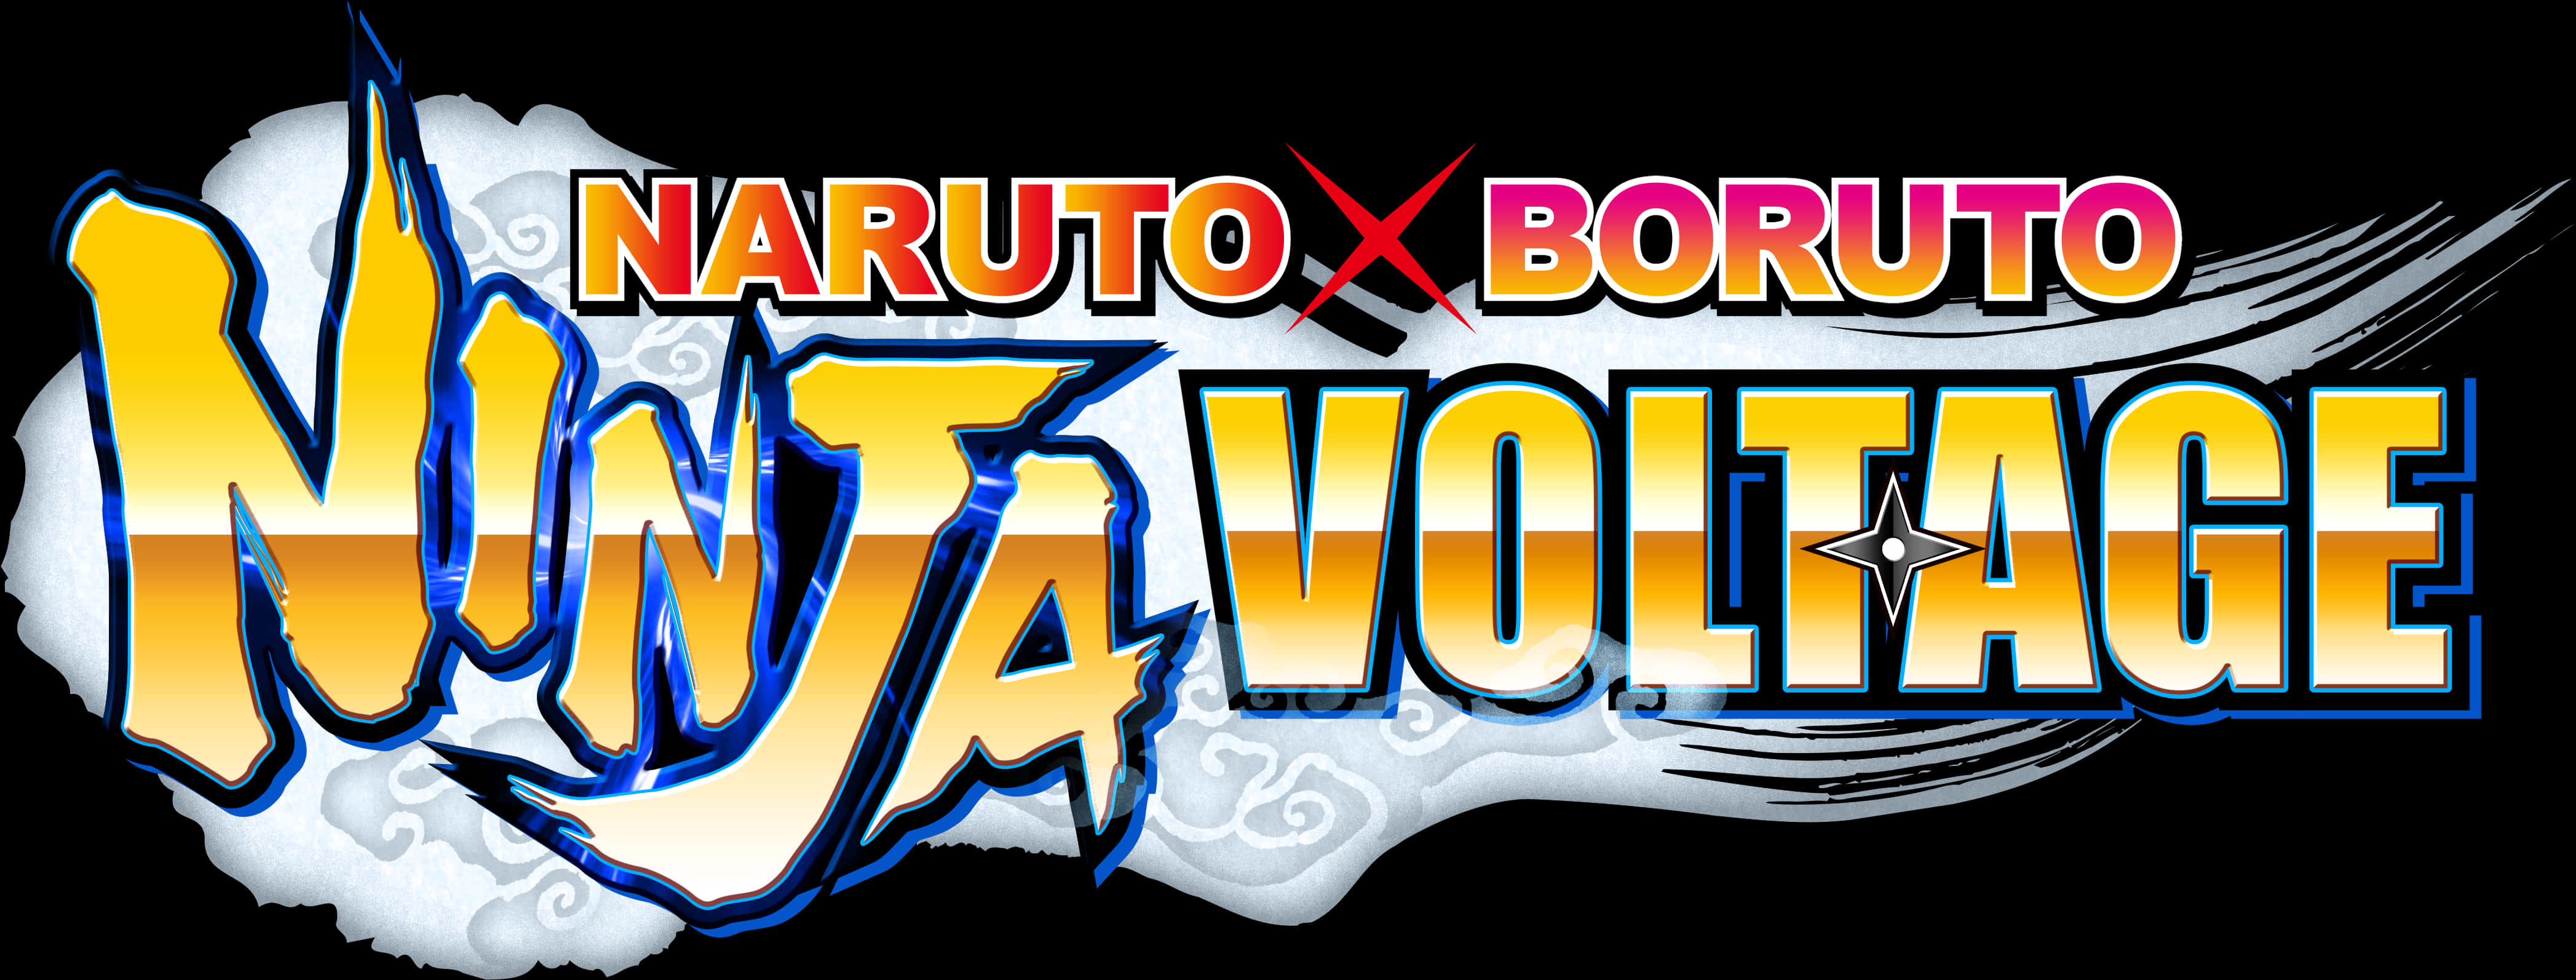 Naruto X Boruto